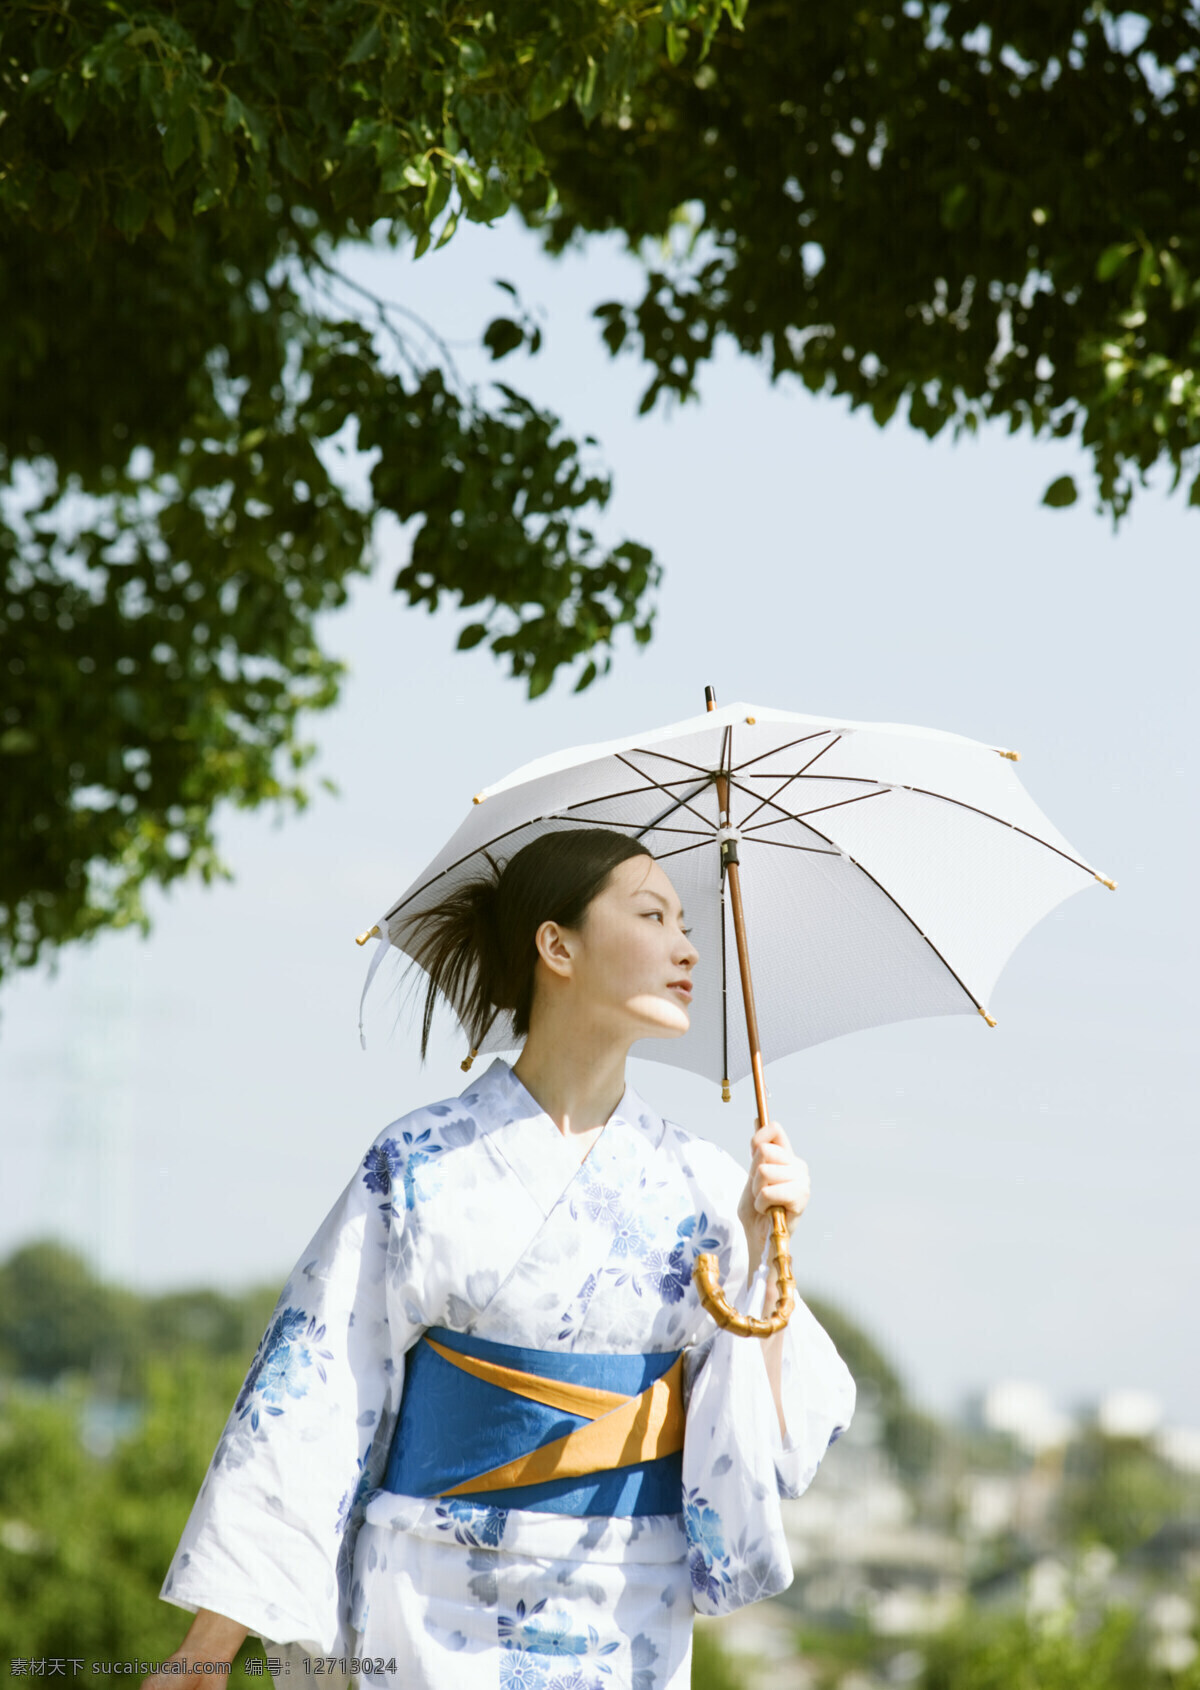 打伞 日本美女 日本夏天 女性 性感美女 日本文化 太阳伞 和服 模特 美女写真 摄影图 高清图片 美女图片 人物图片